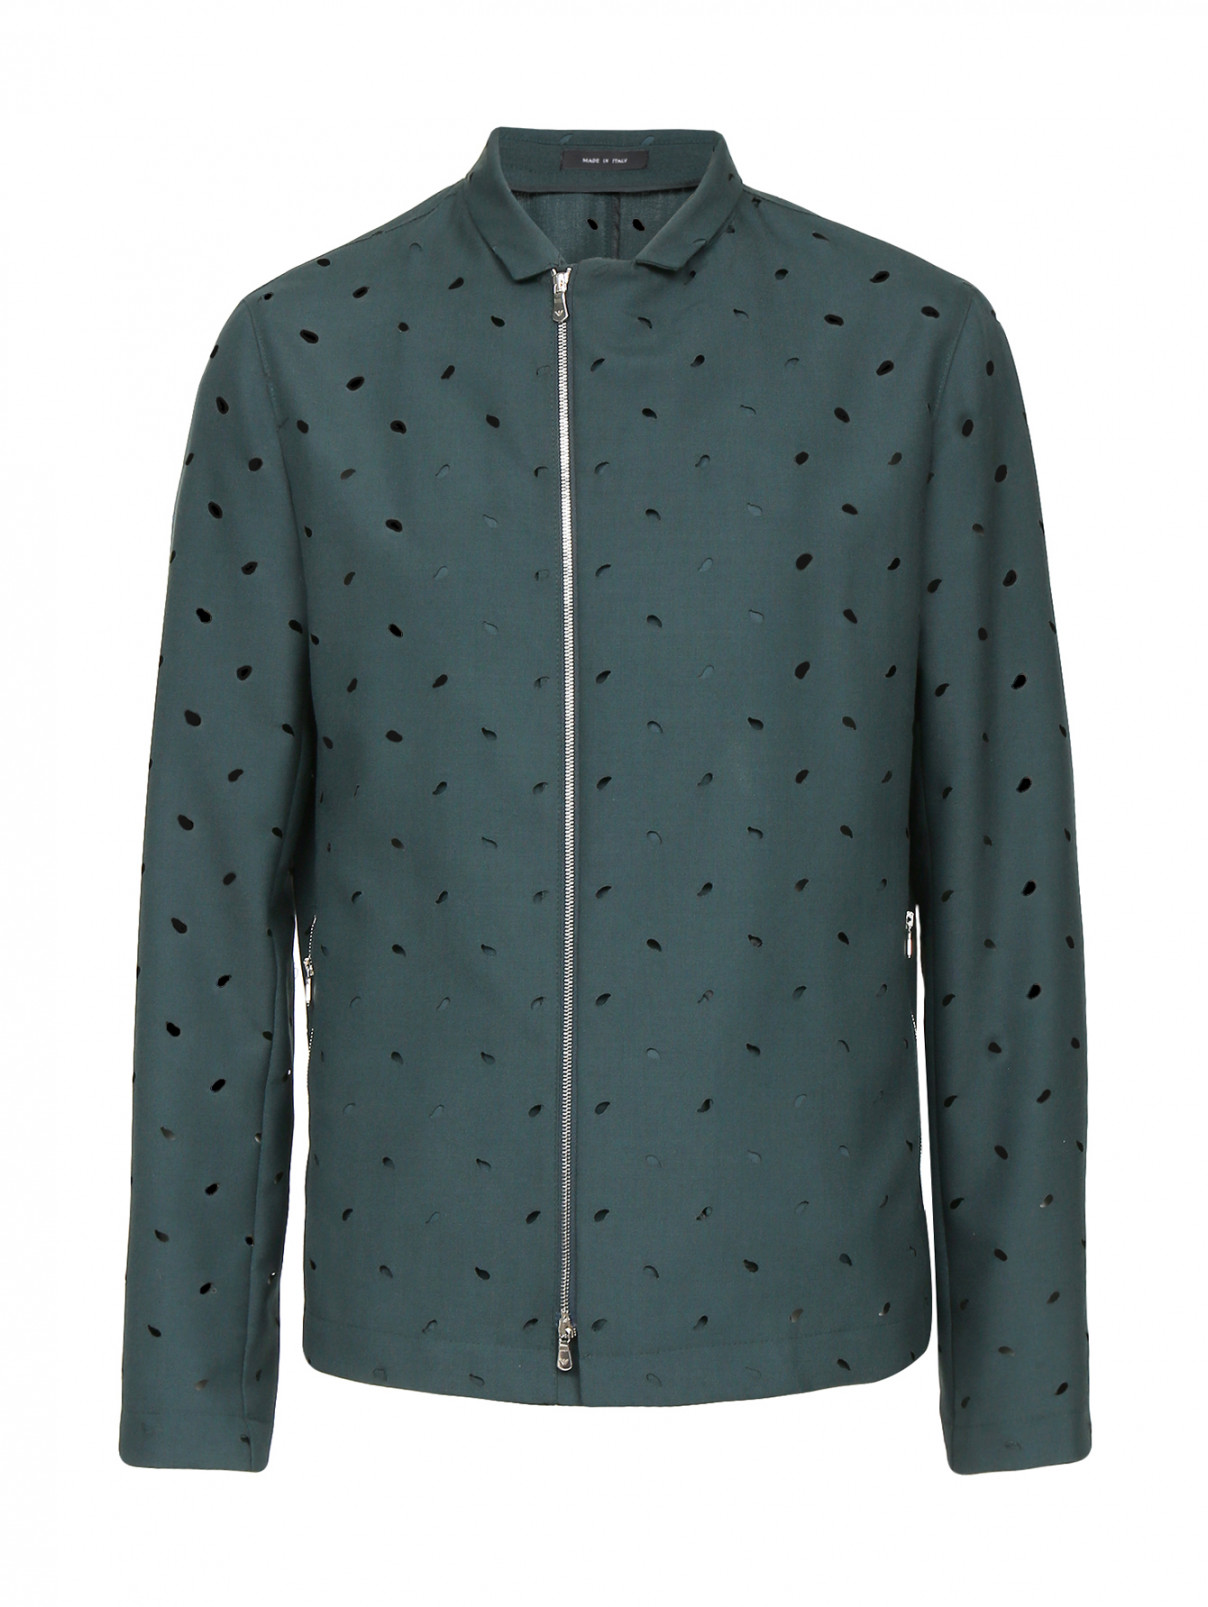 Куртка на молнии с перфорацией Emporio Armani  –  Общий вид  – Цвет:  Зеленый